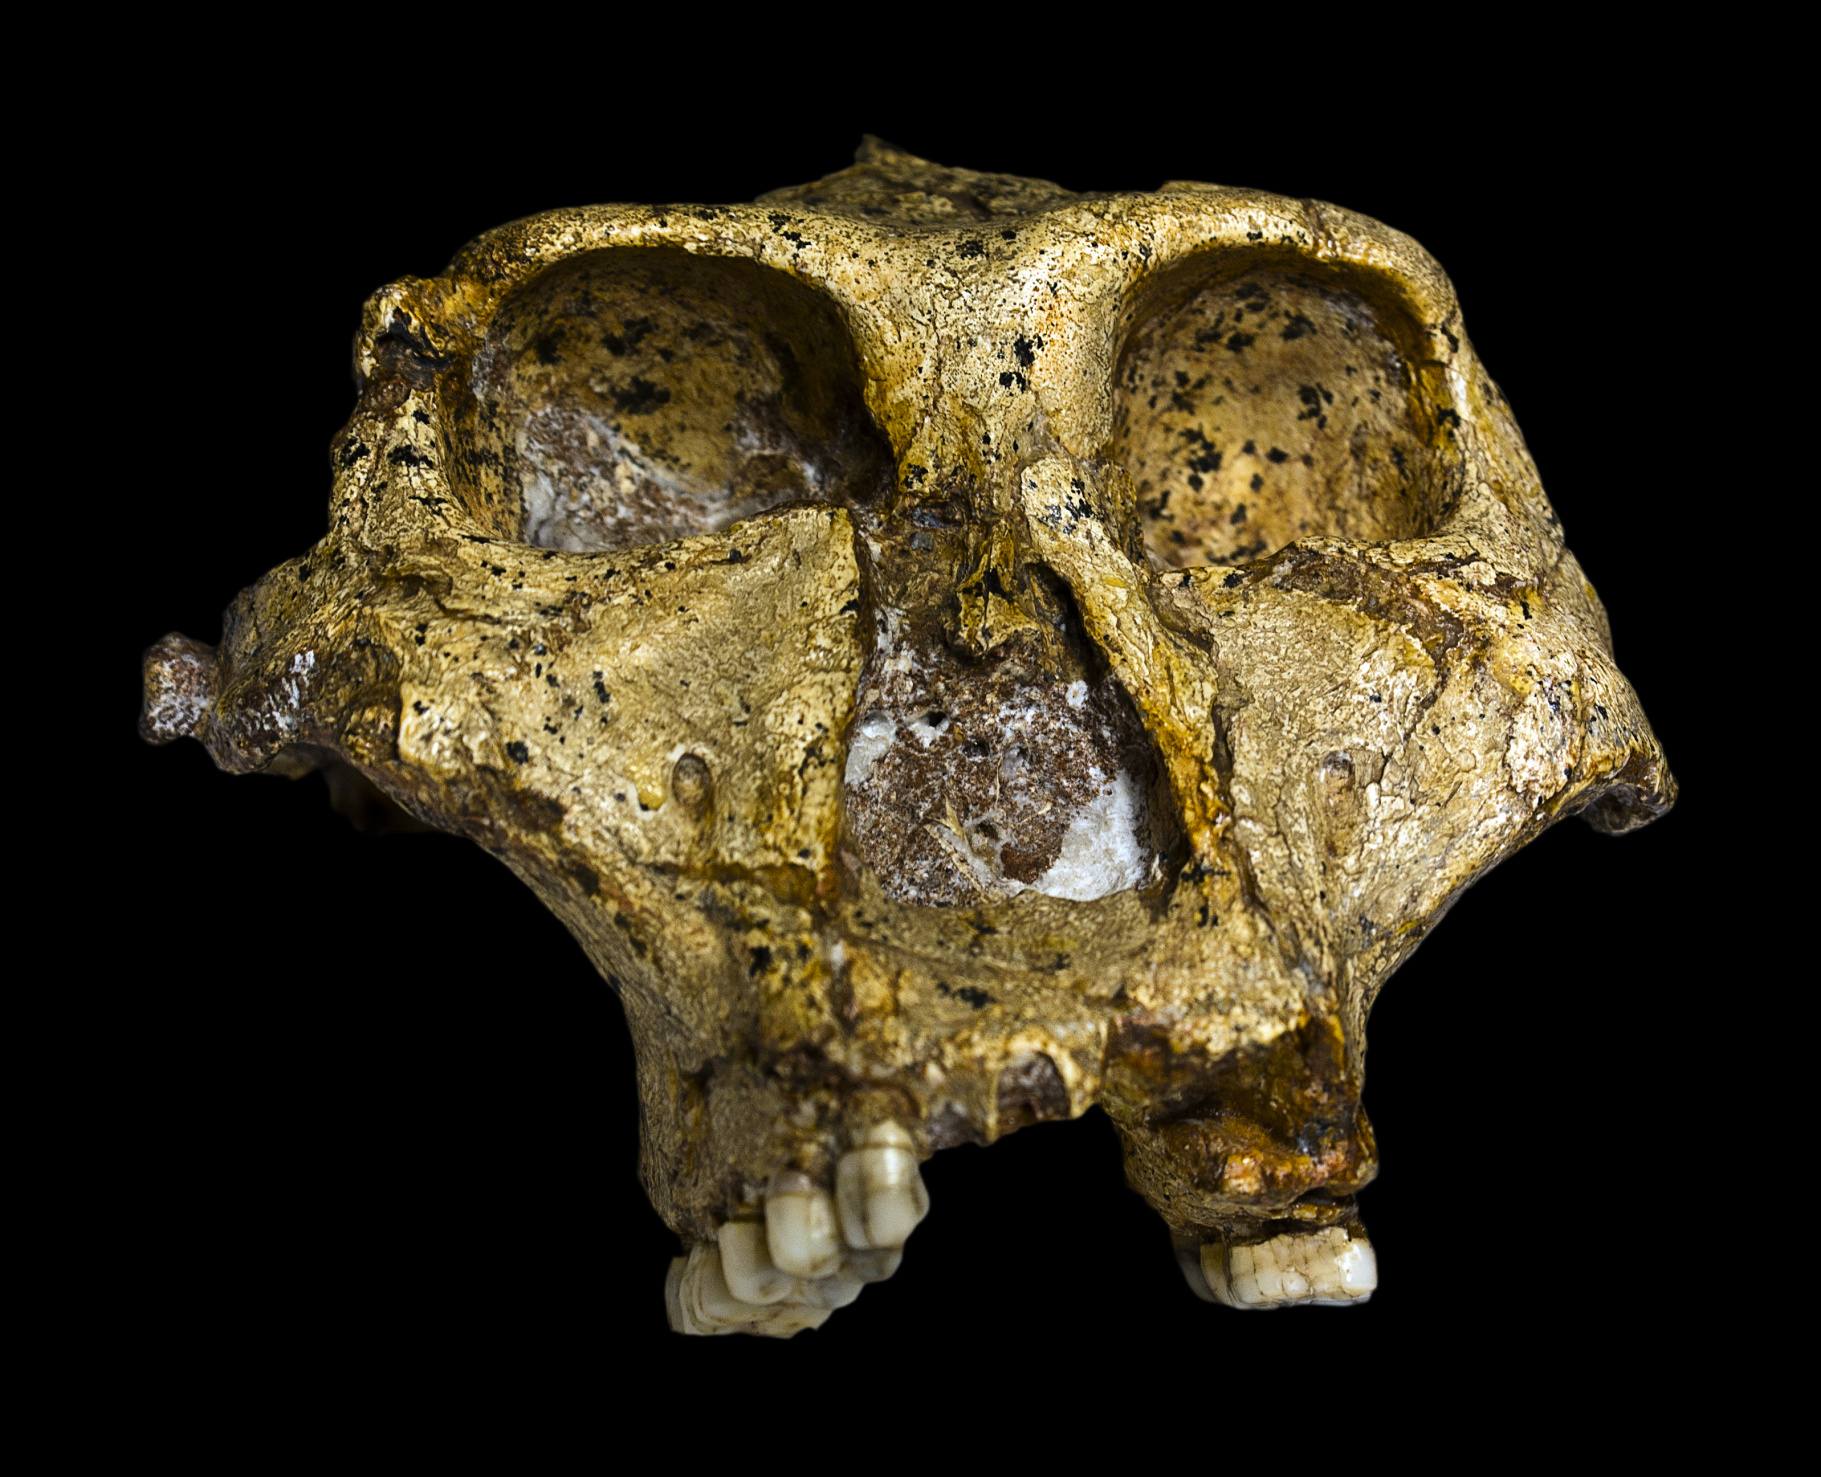 El cráneo original completo (sin mandíbula) de un Paranthropus robustus de 1,8 millones de años (SK-48 Swartkrans (26°00'S 27°45'E), Gauteng), descubierto en Sudáfrica. Colección del Museo Transvaal, Northern Flagship Institute, Pretoria Sudáfrica.